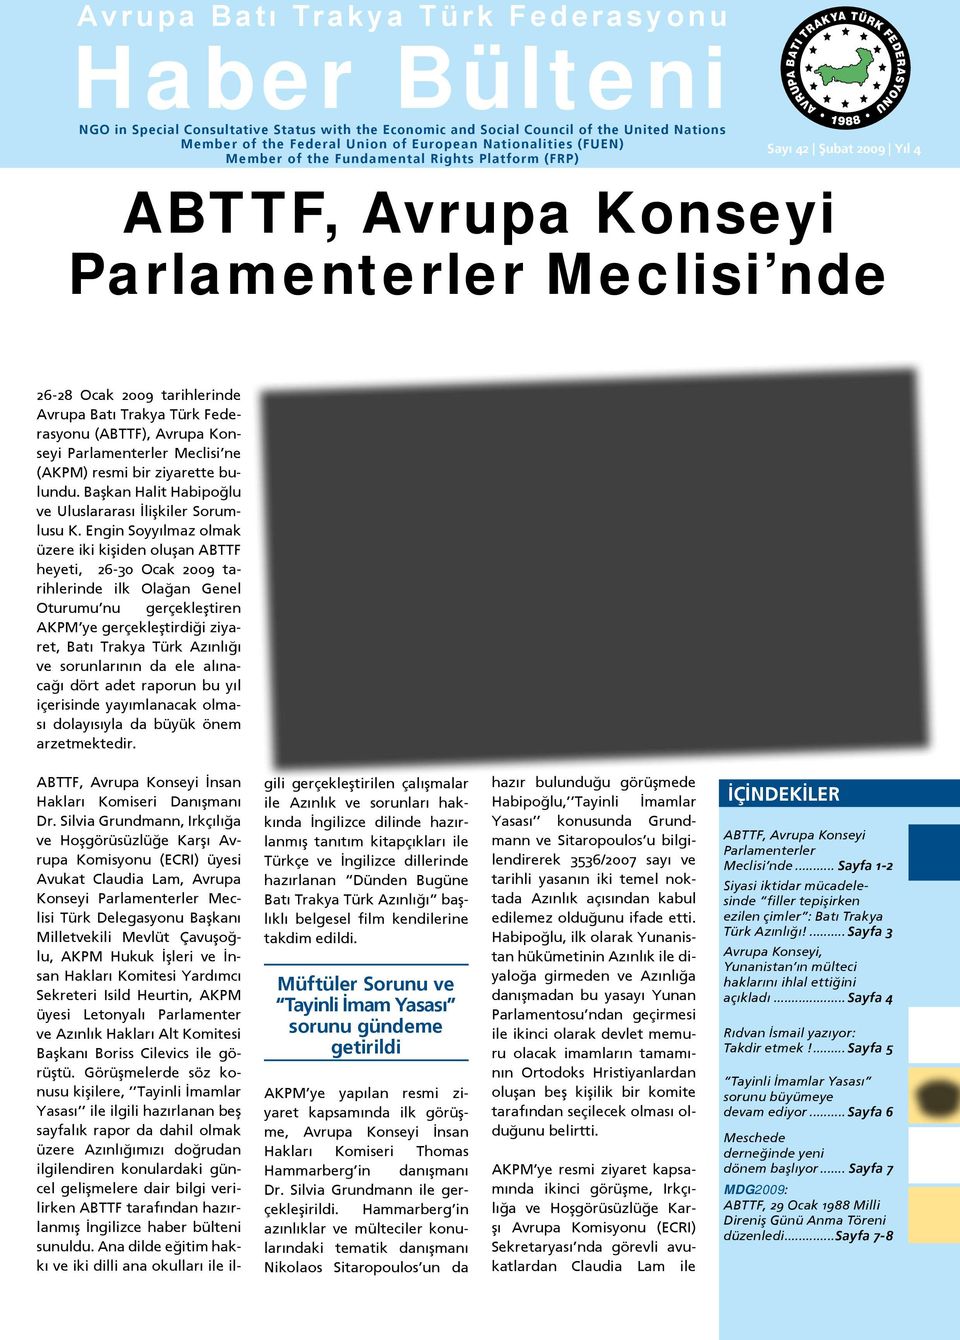 26-28 Ocak 2009 tarihlerinde Avrupa Batı Trakya Türk Federasyonu (ABTTF), Avrupa Konseyi Parlamenterler Meclisi ne (AKPM) resmi bir ziyarette bulundu.